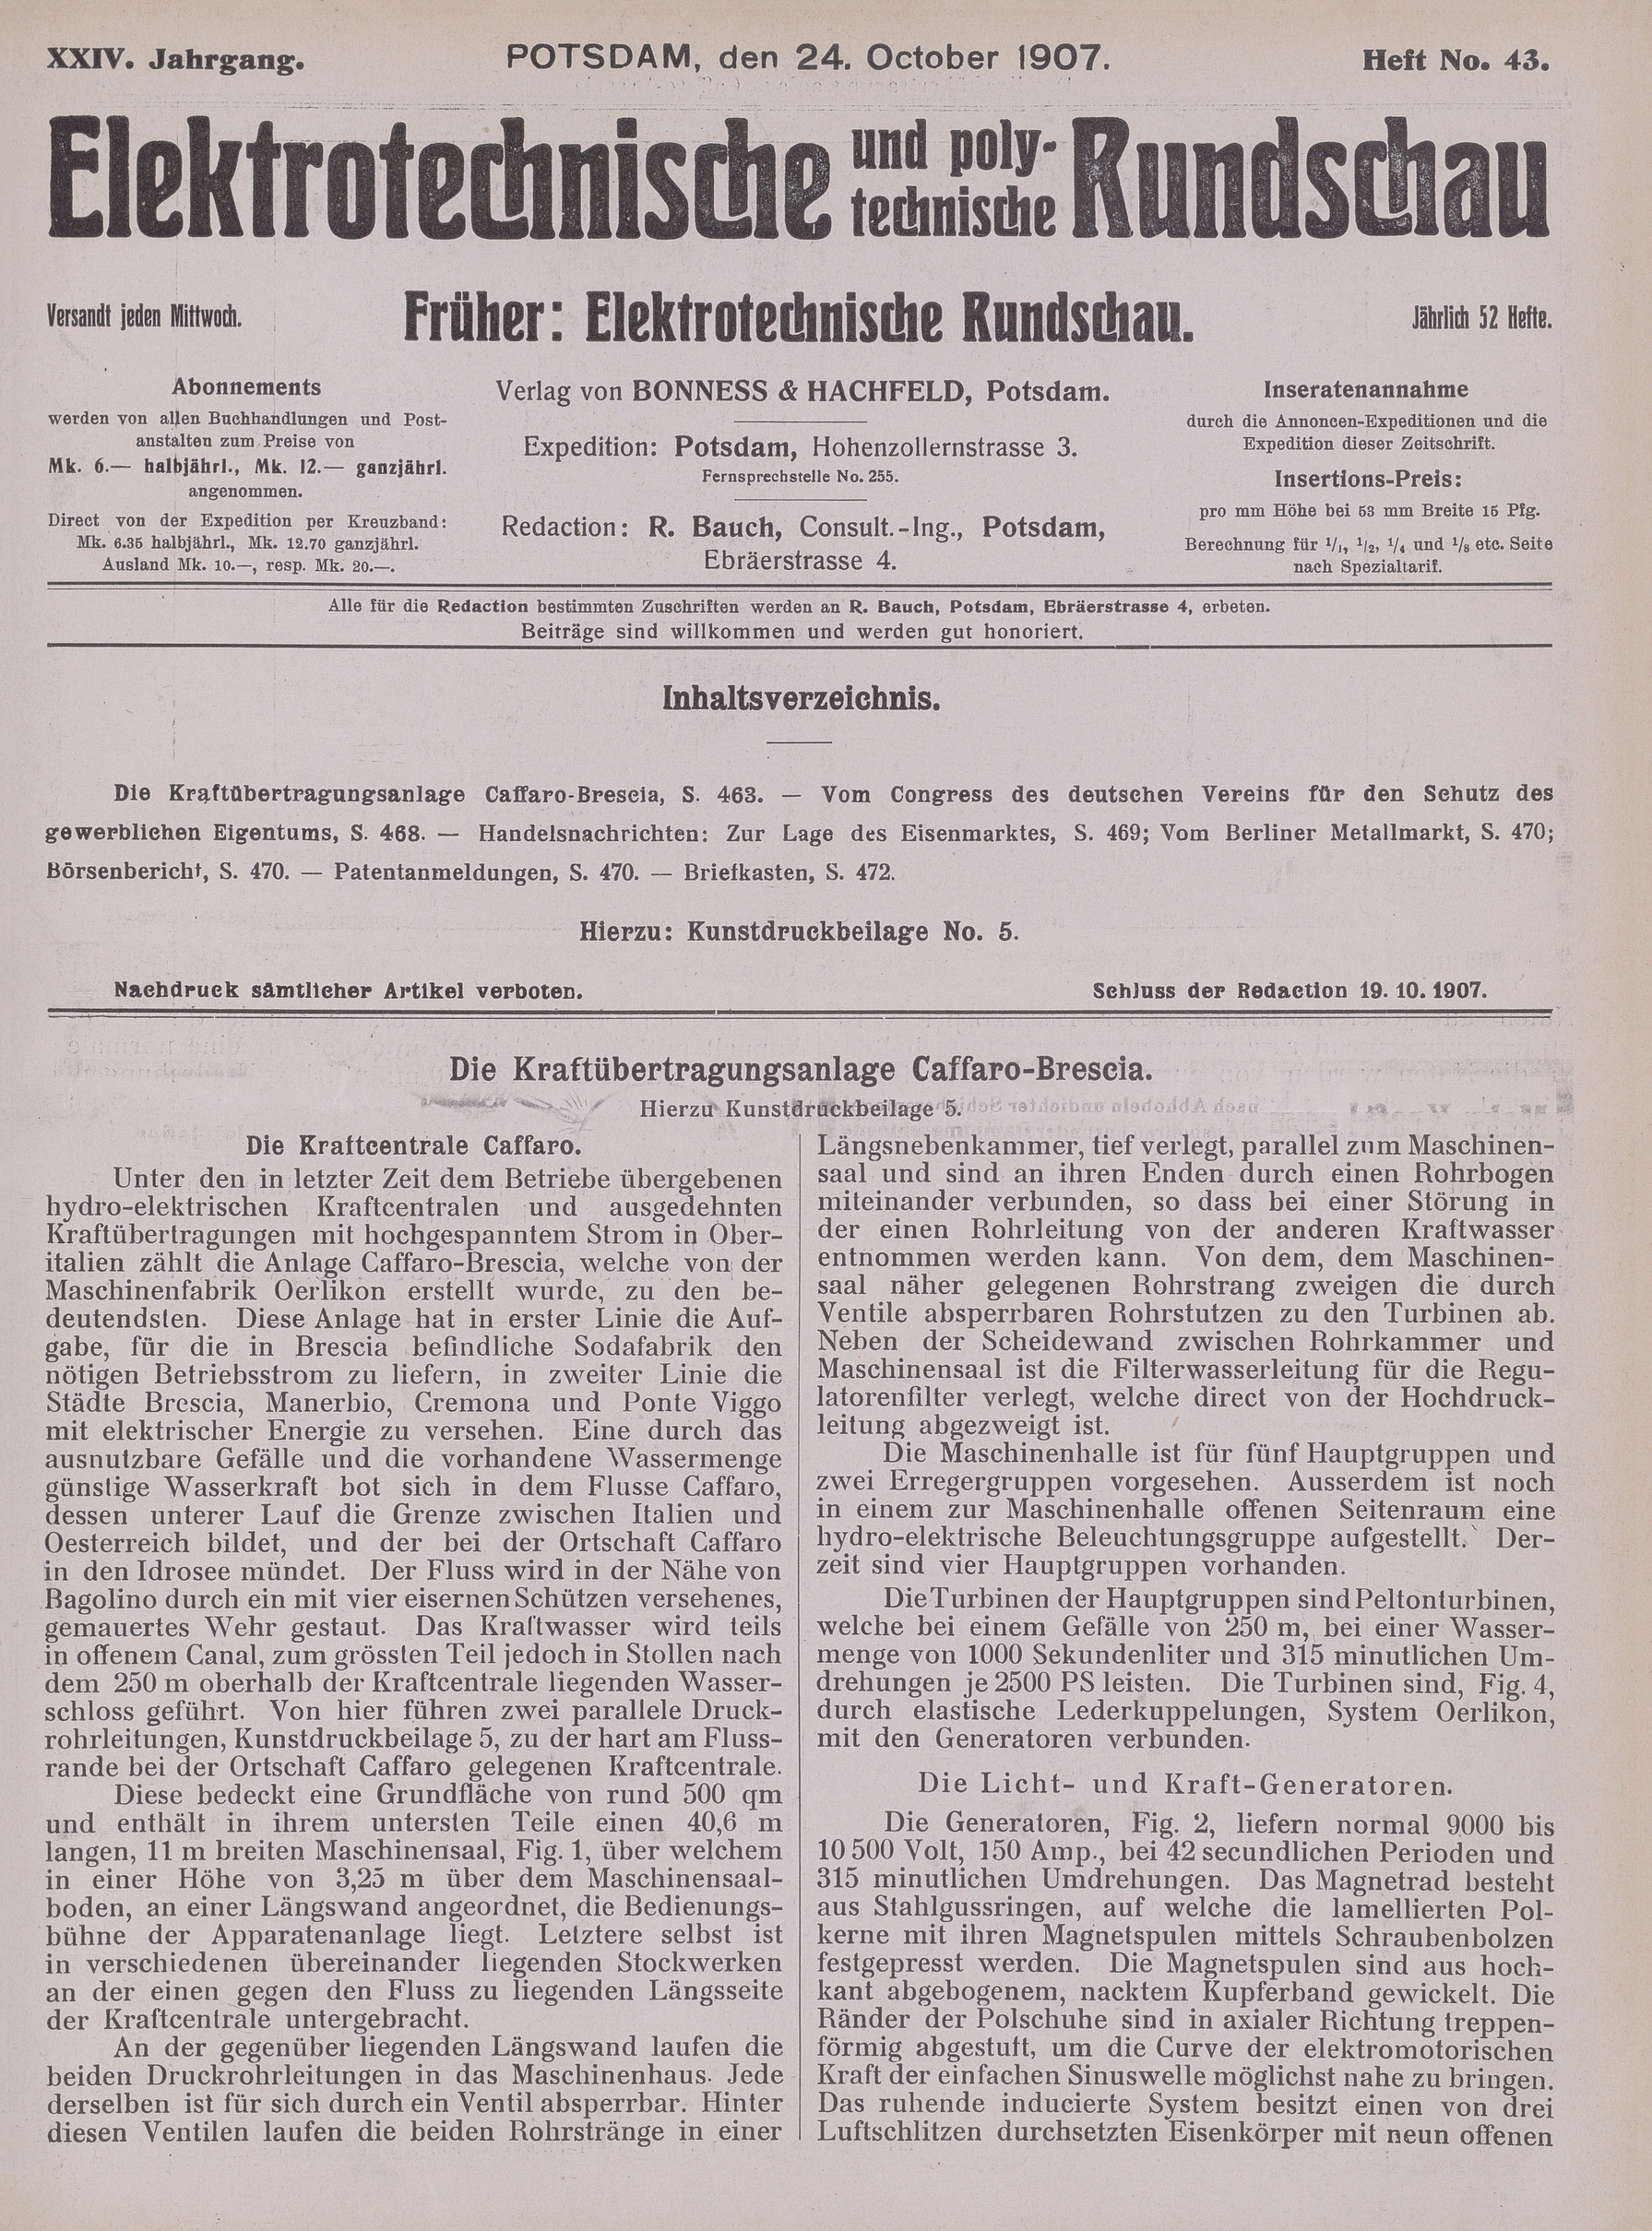 Elektrotechnische und polytechnische Rundschau, XXIV. Jahrgang, Heft No. 43